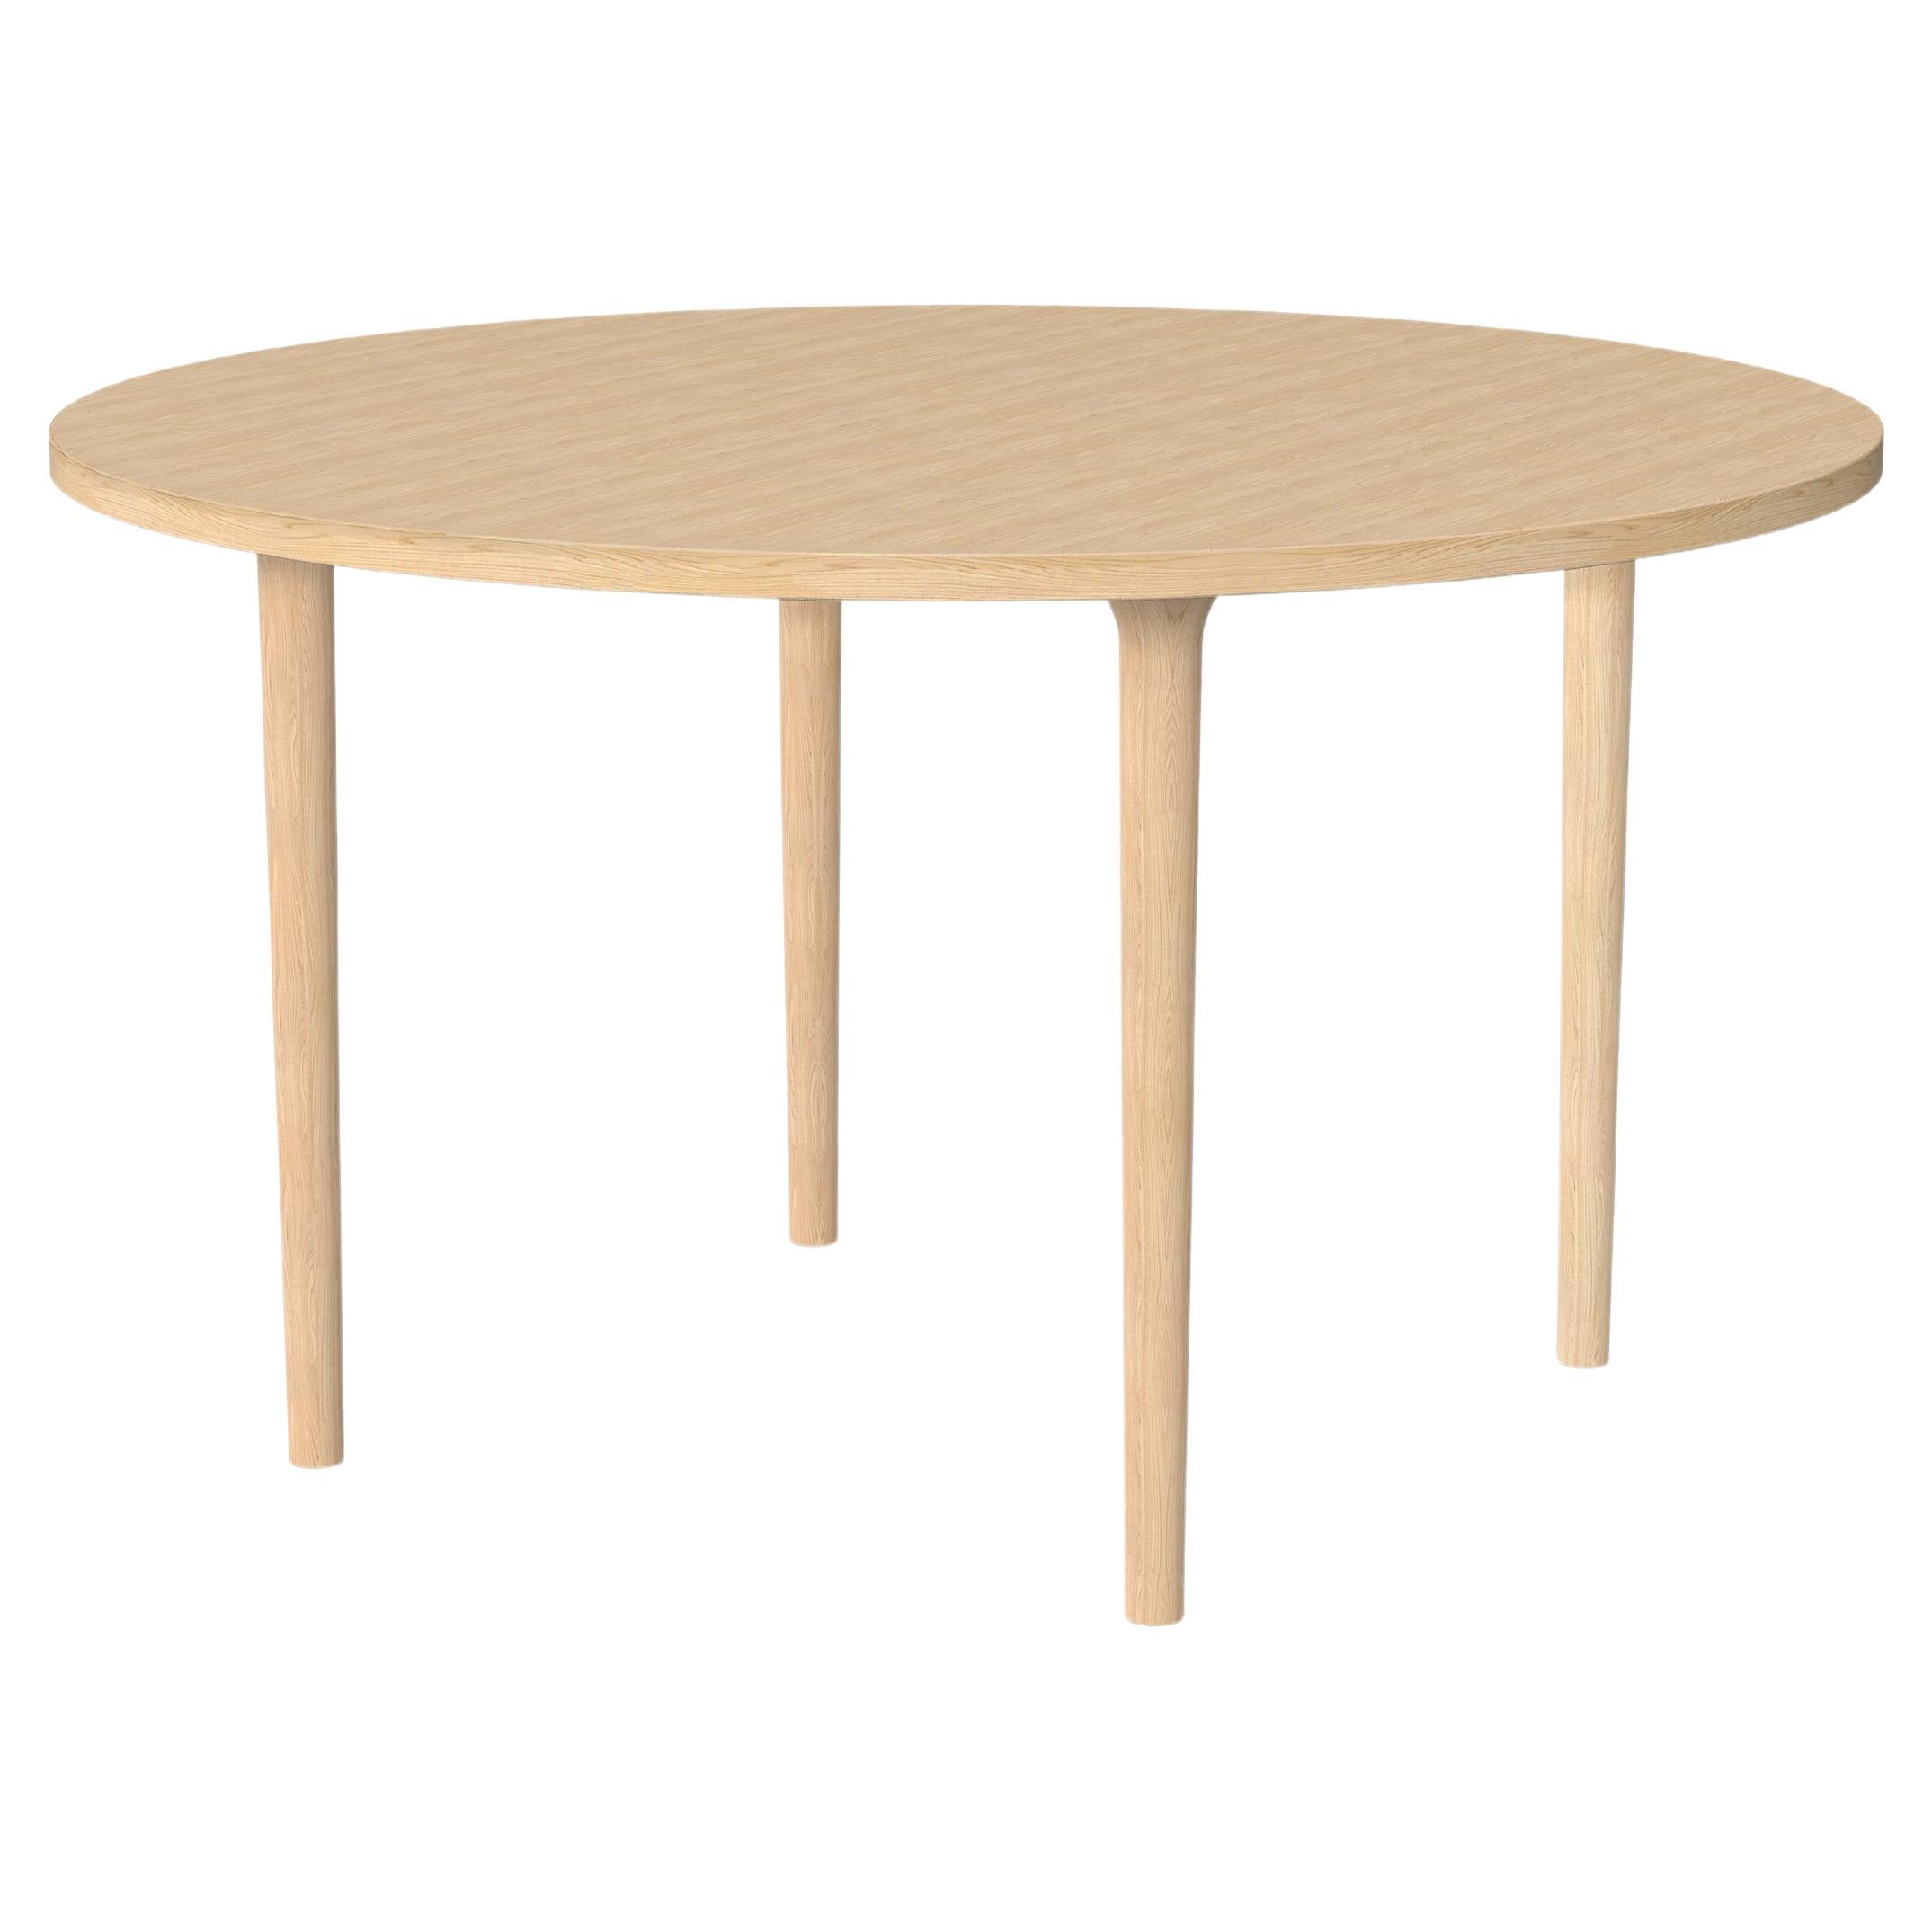 Moderner Tisch aus Eschenholz, rund 130 cm